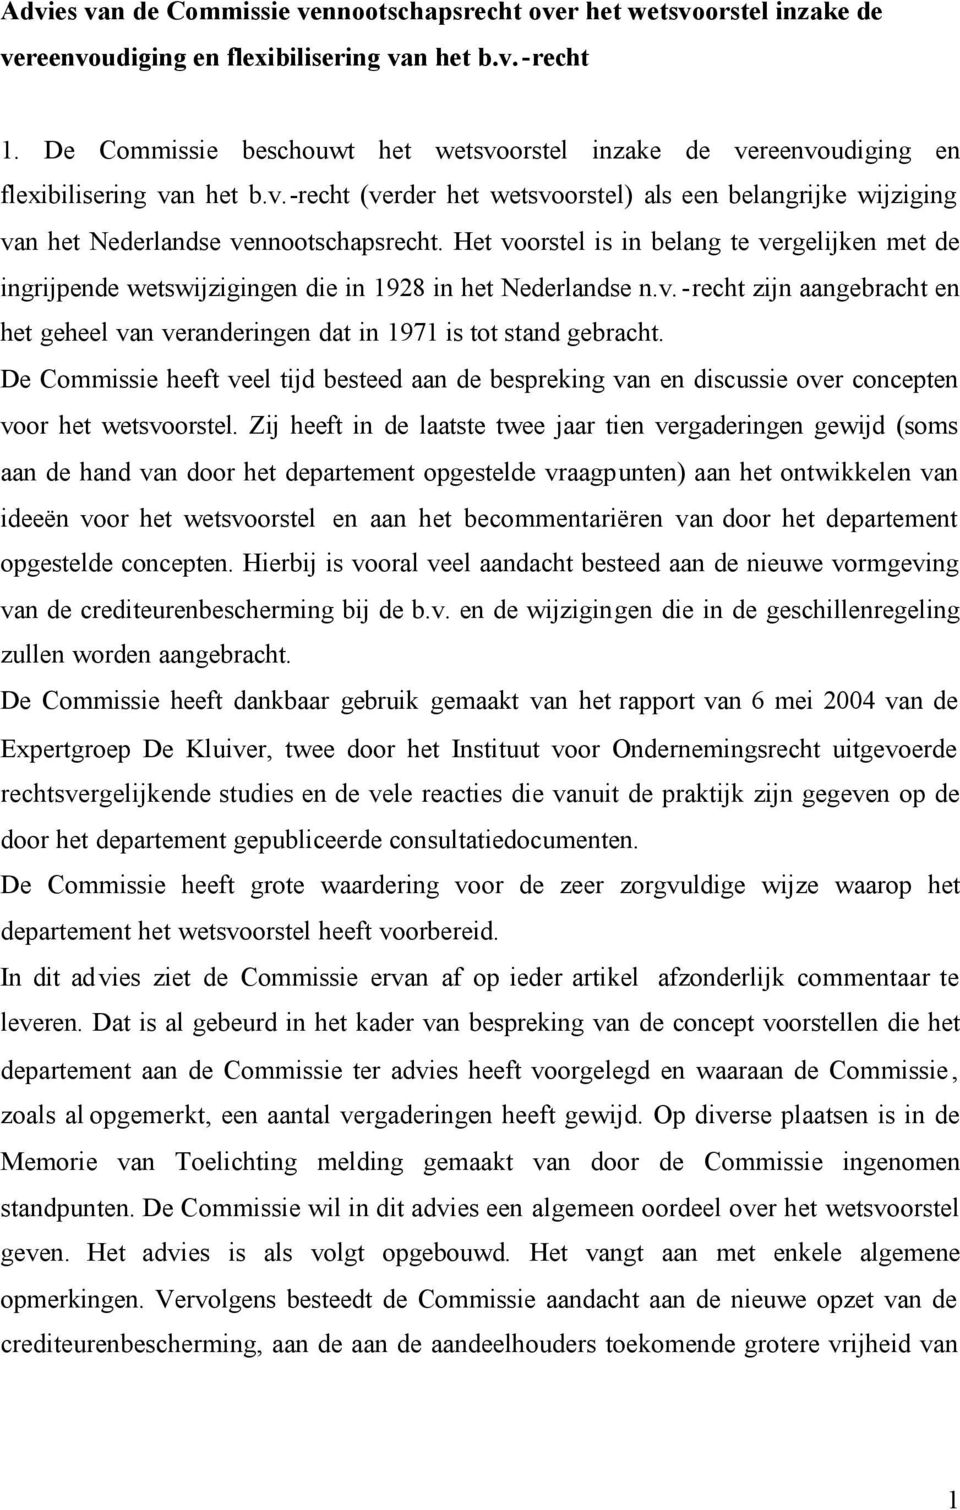 Het voorstel is in belang te vergelijken met de ingrijpende wetswijzigingen die in 1928 in het Nederlandse n.v.-recht zijn aangebracht en het geheel van veranderingen dat in 1971 is tot stand gebracht.